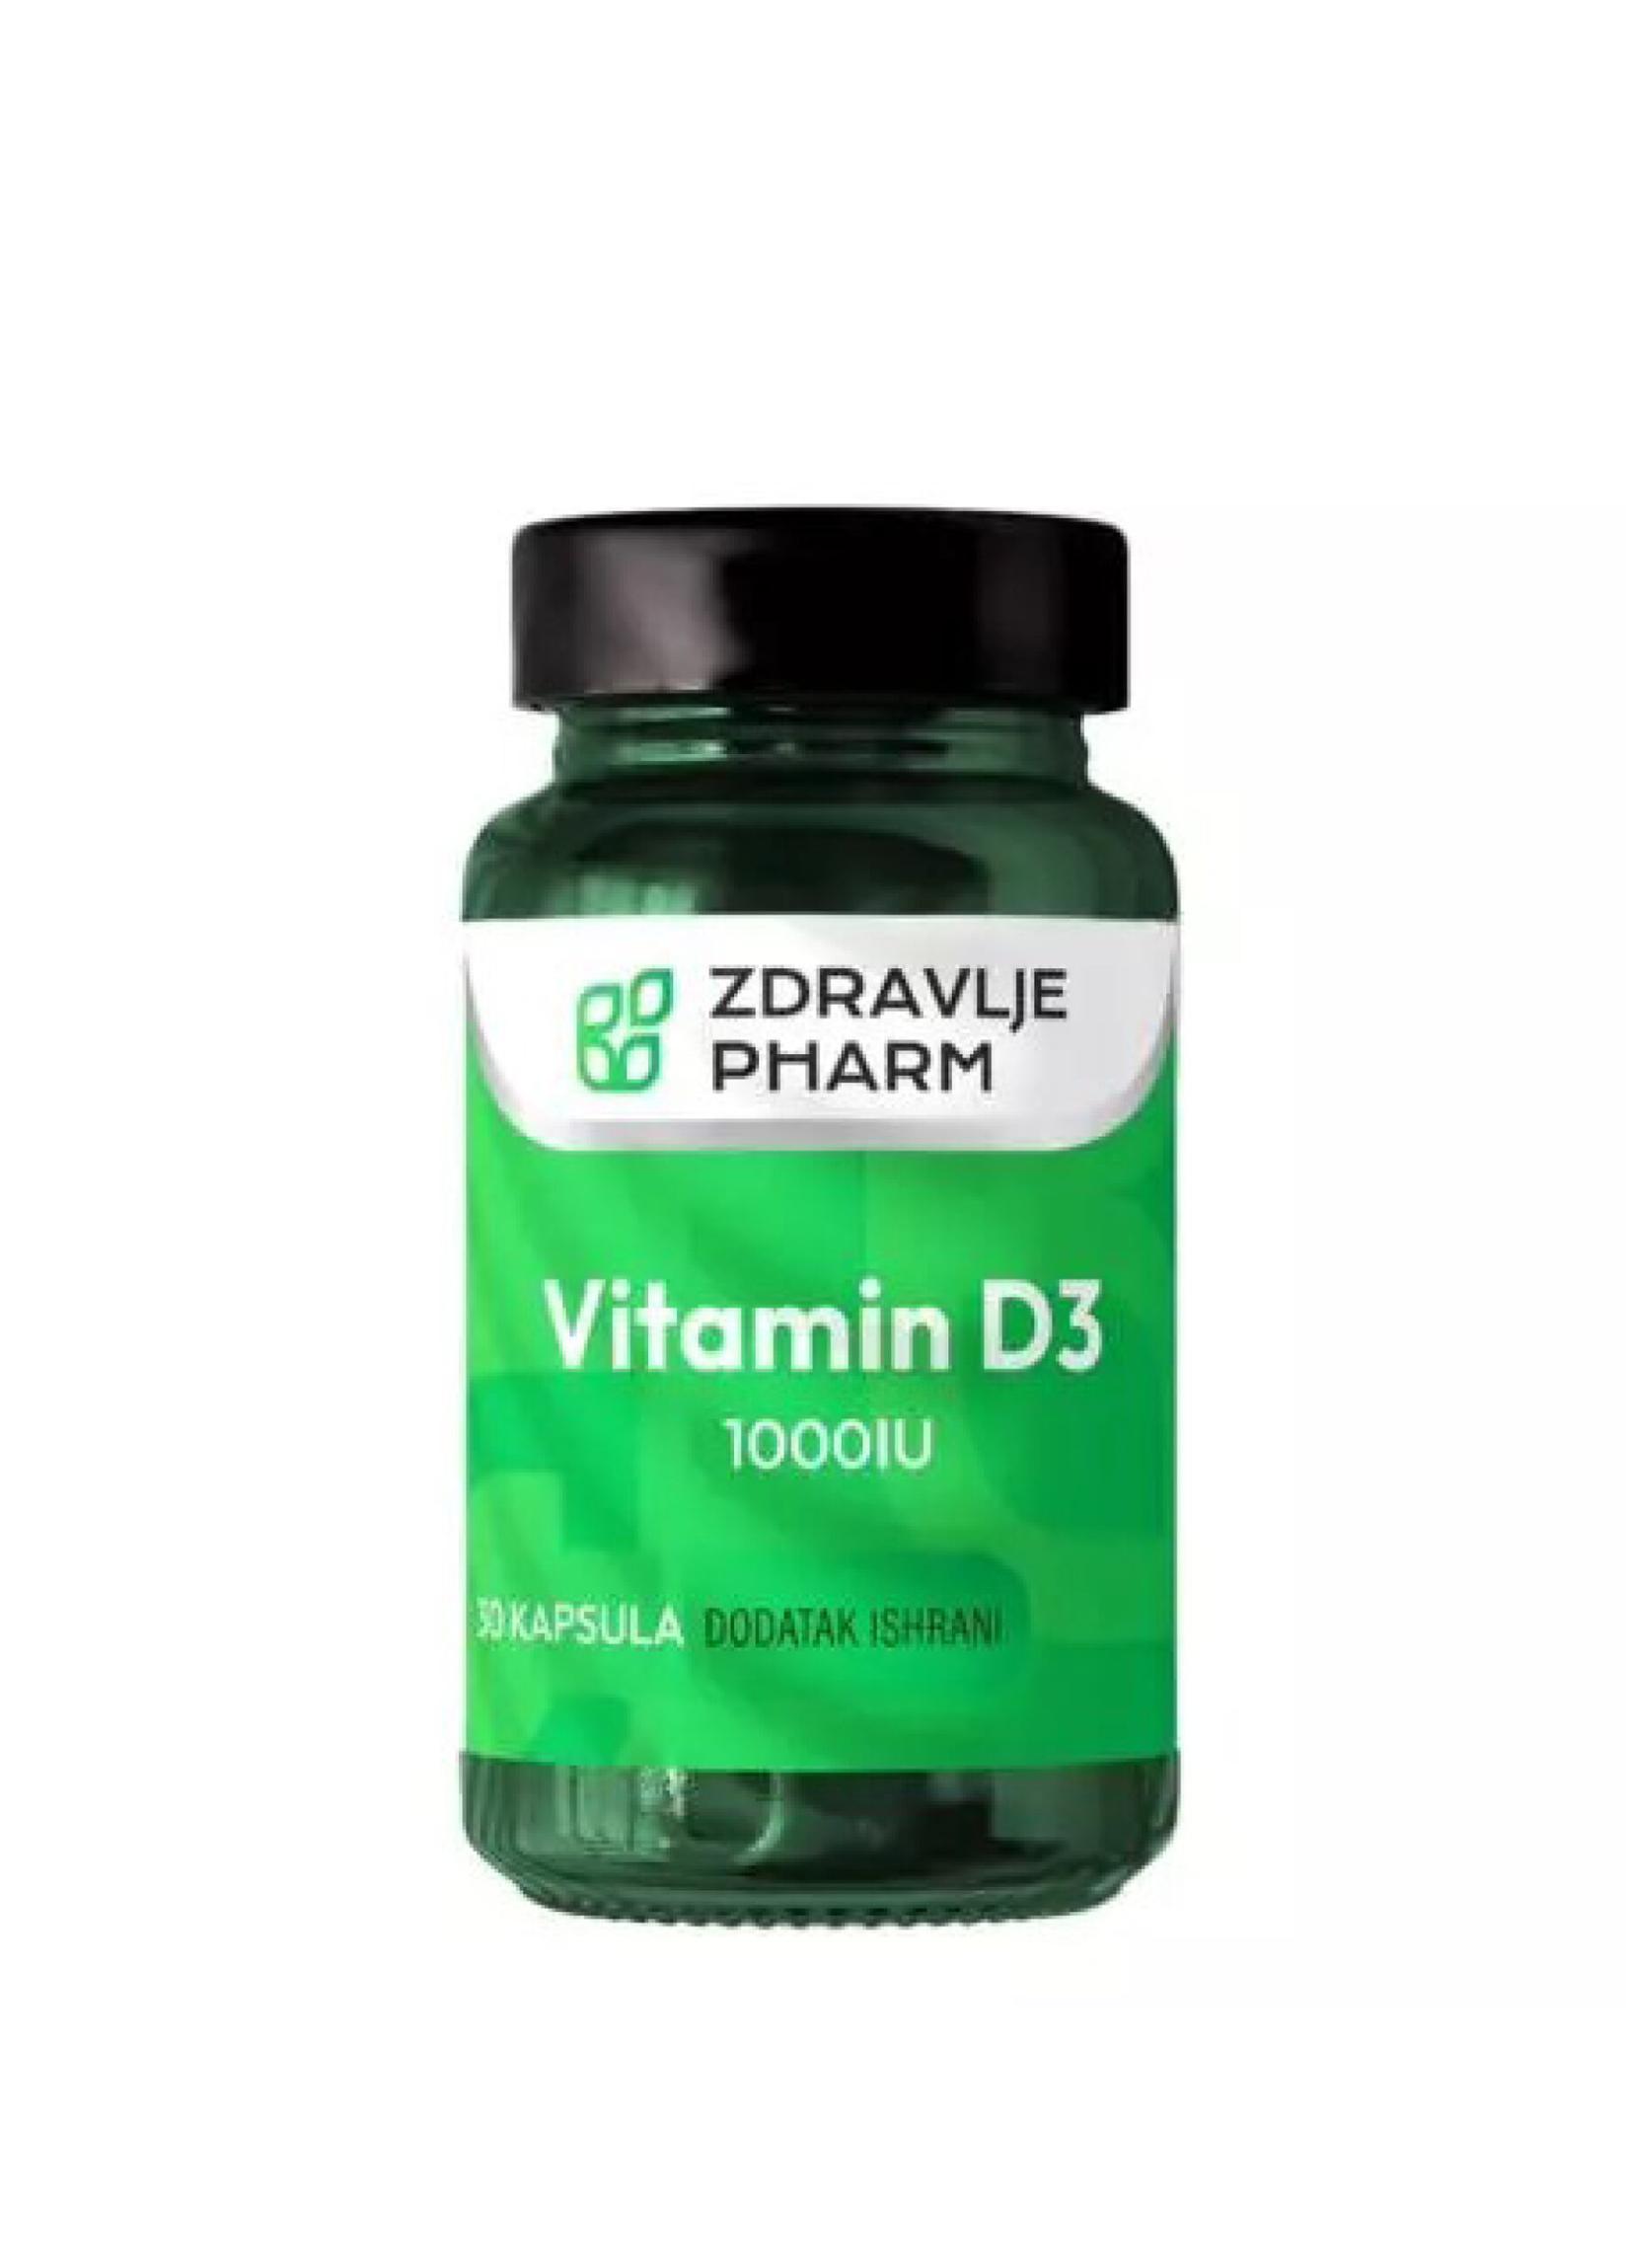 ZDRAVLJE PHARM Vitamin D3 1000 IU